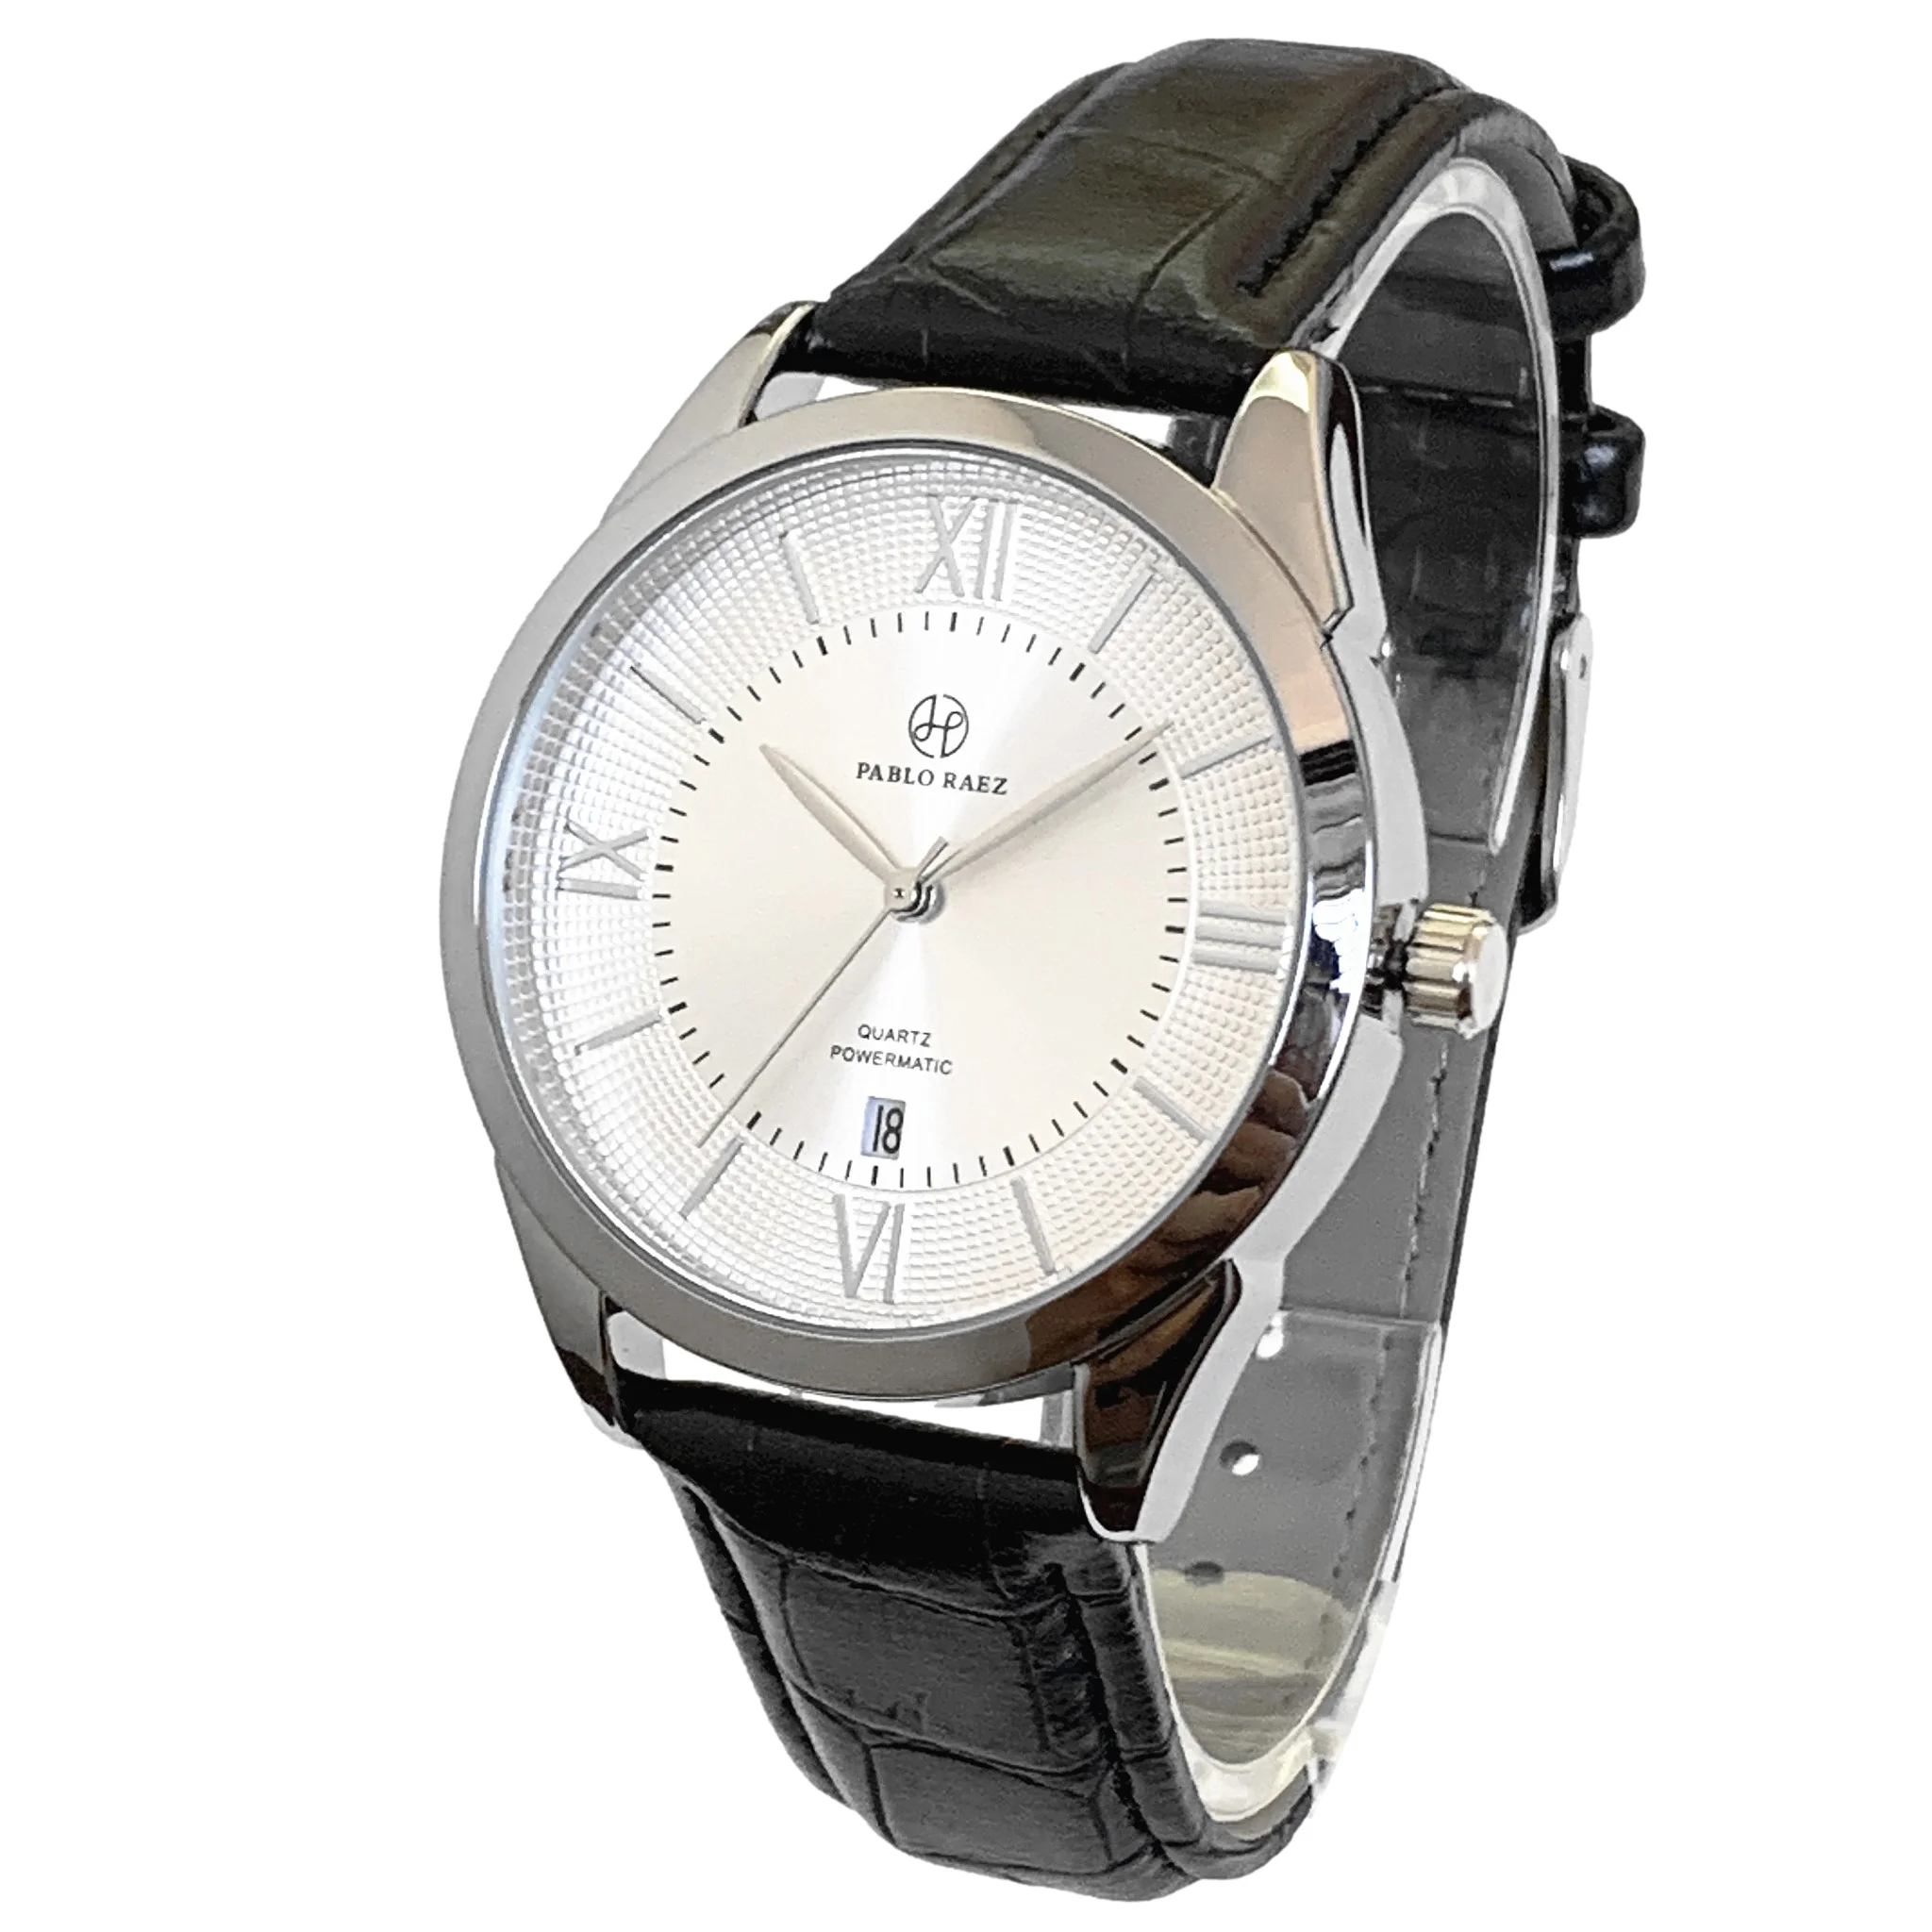 

PABLO RAEZ Fashion Men Watch Stainless Steel Top Selling Luxury Brand Waterproof Date Leather Wristwatch Male Sport Quartz Clock